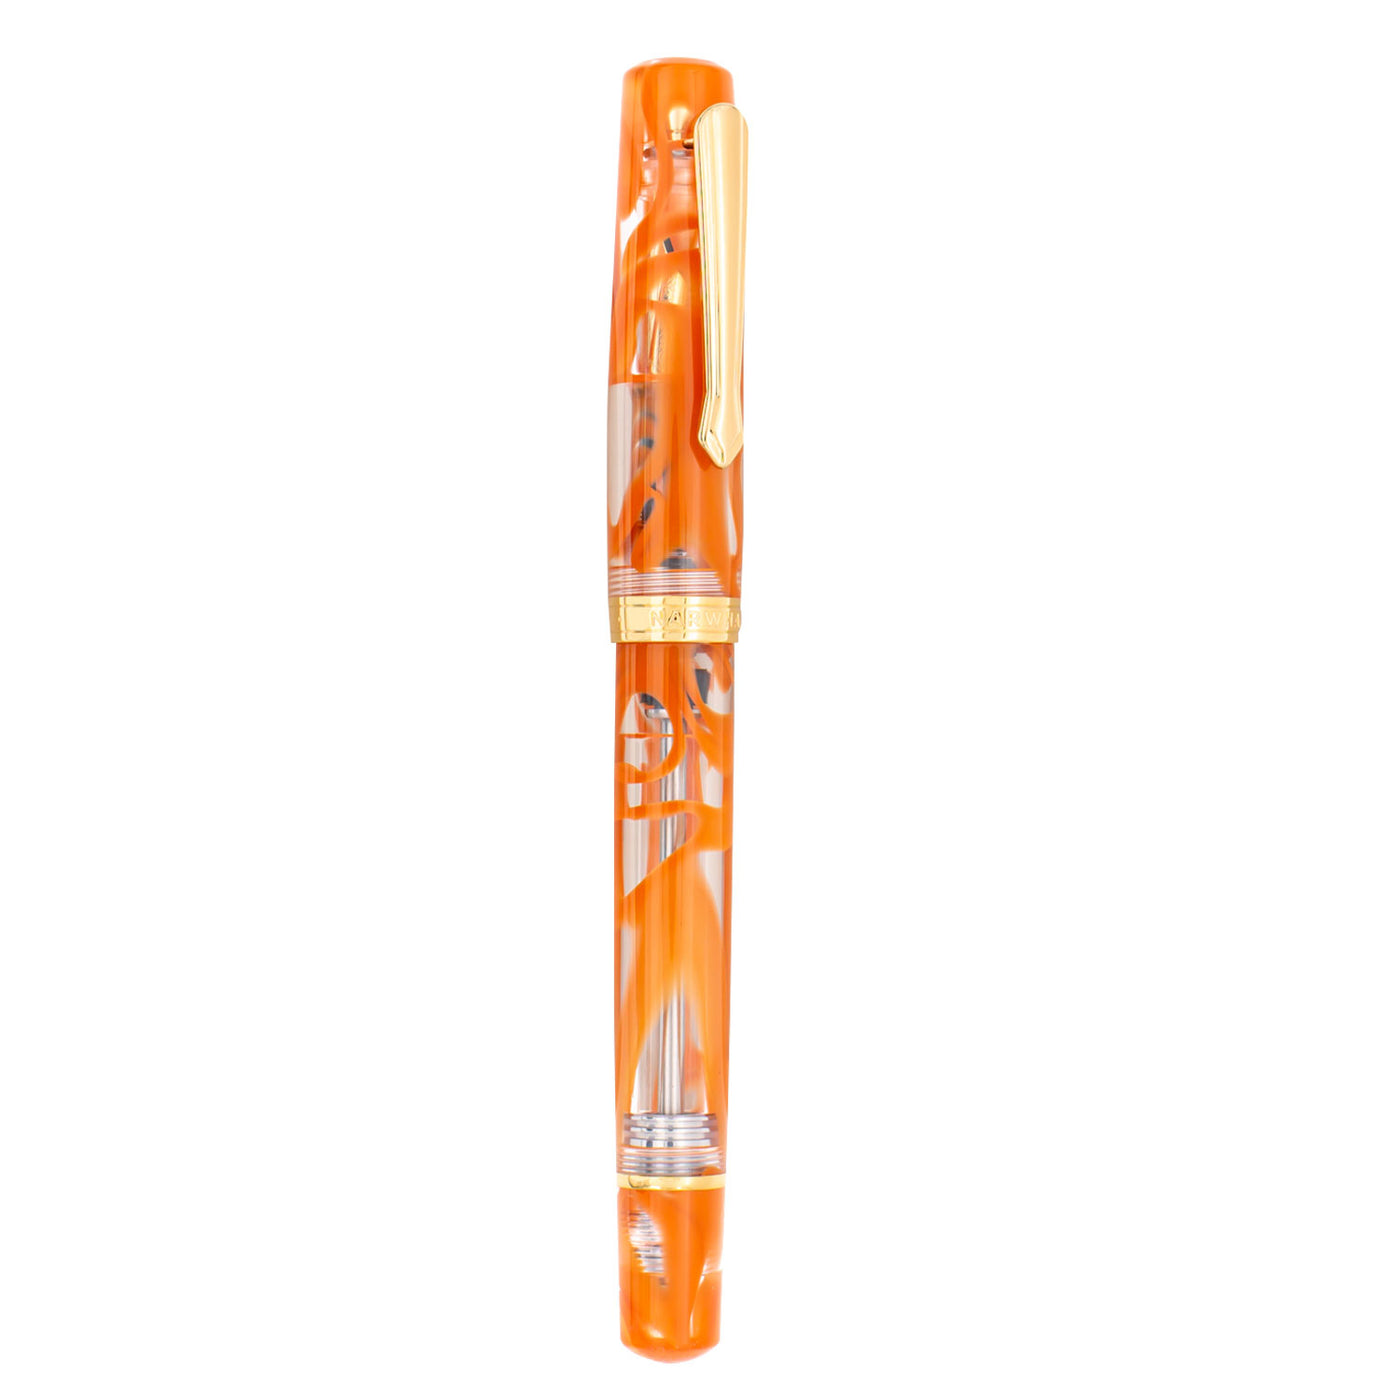 Nahvalur Original Plus Fountain Pen - Garibaldi Orange 3